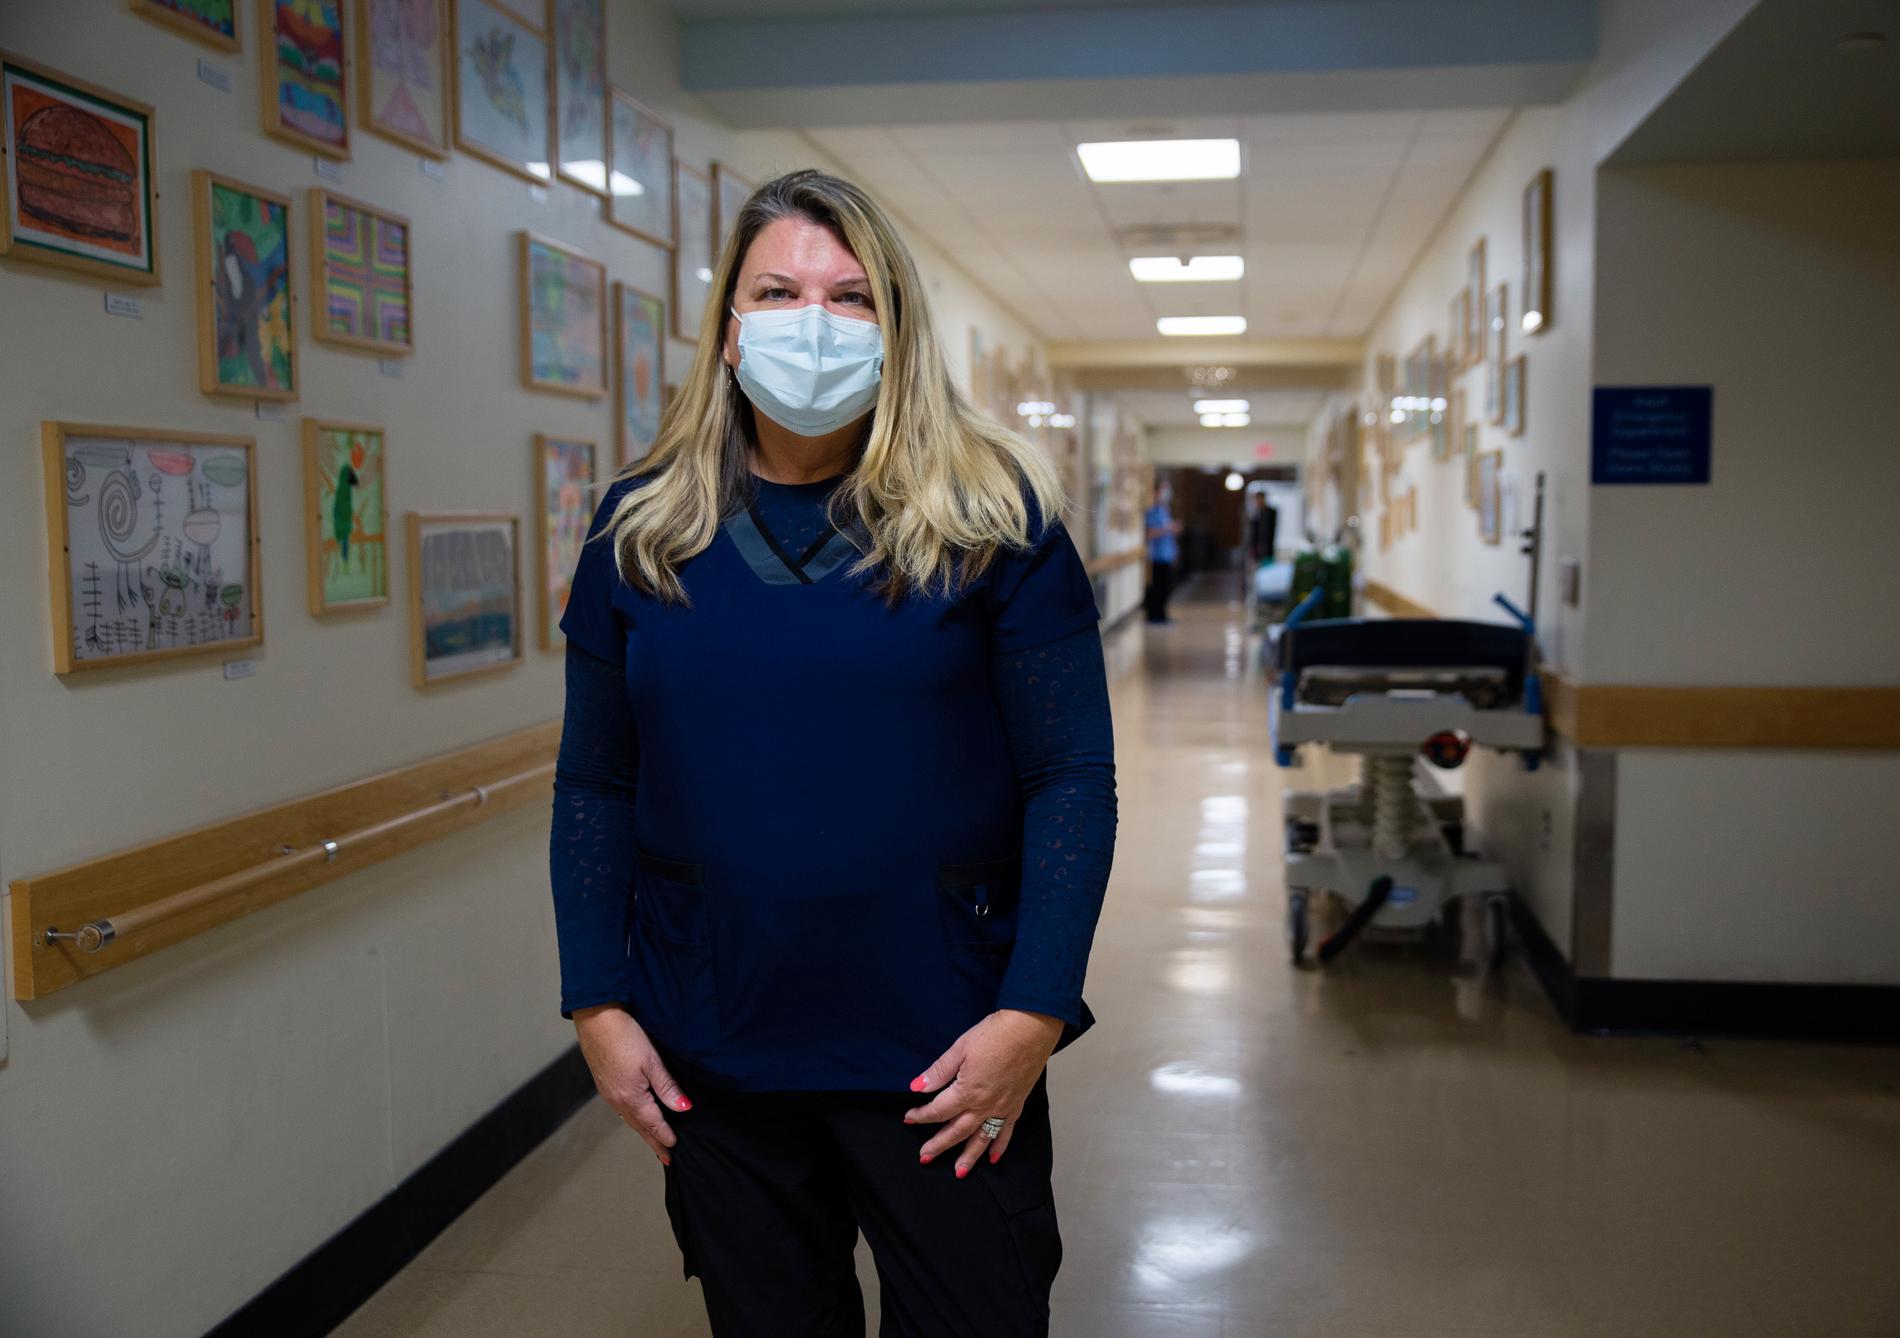 Sjuksköterksan Karen O’Donnell Fountain märker av vågen av RS-smitta på sitt jobb, hon beskriver situationen som ”hjärtskärande”.